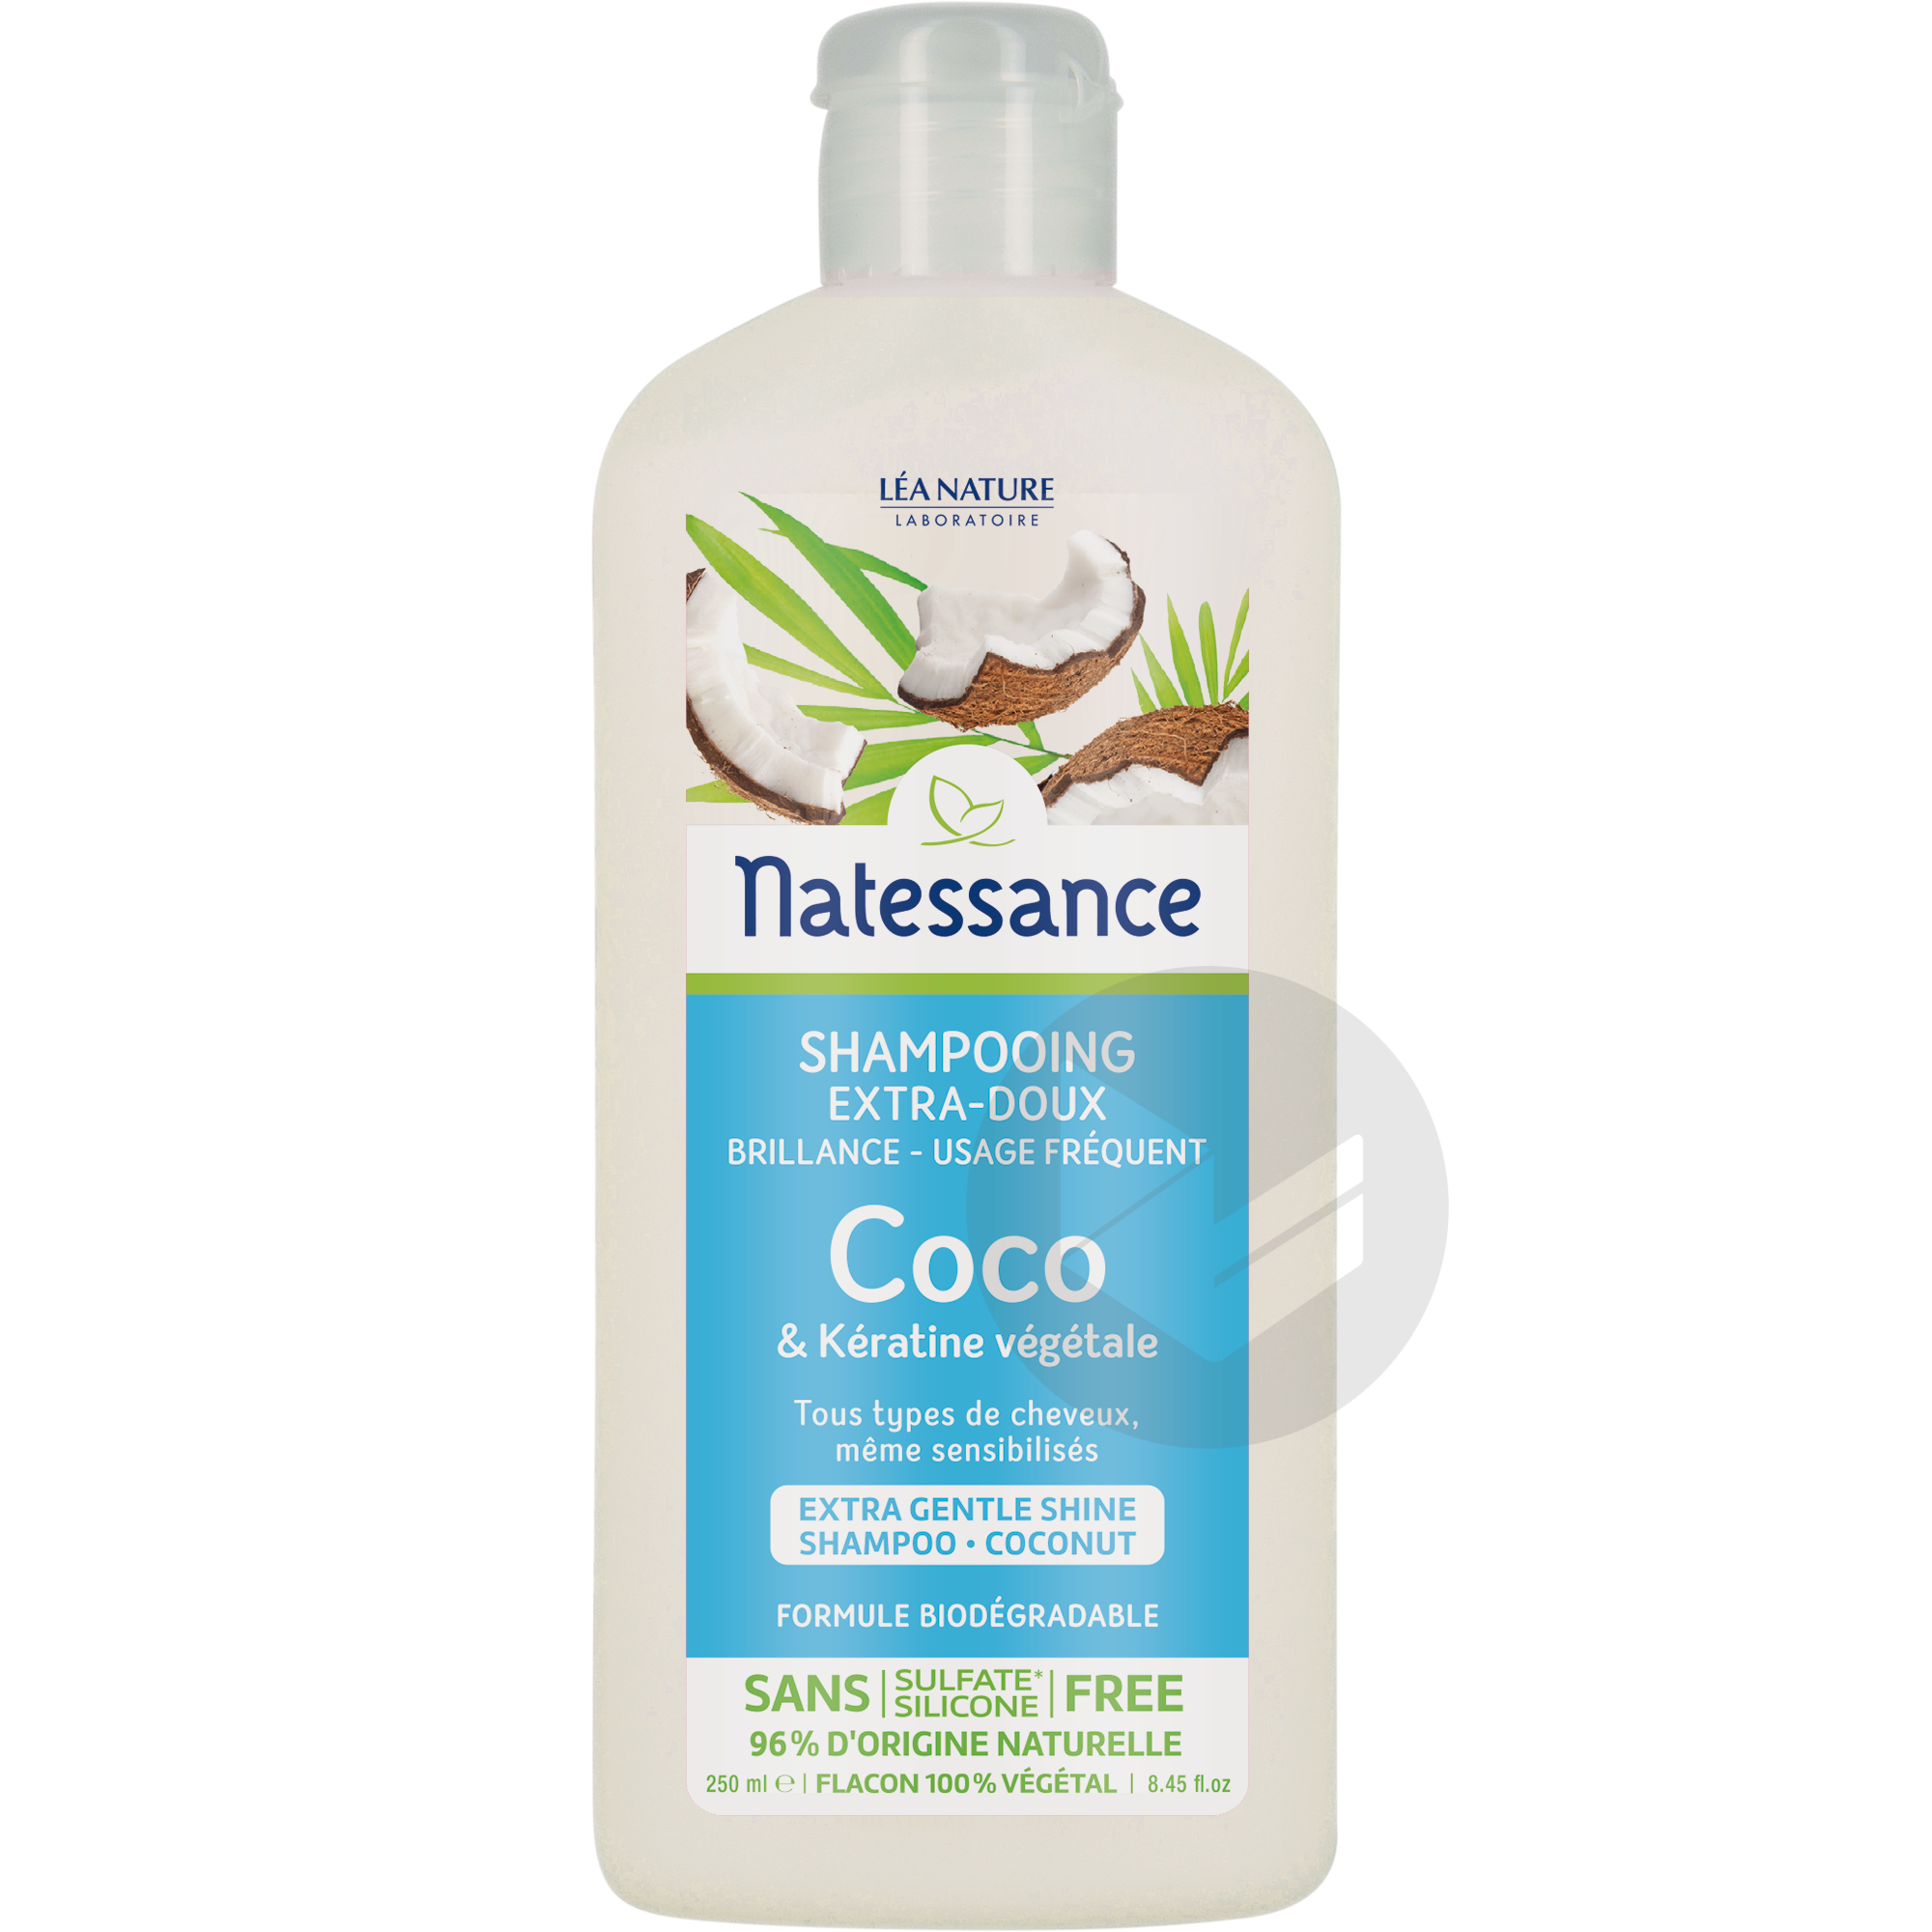 Shampooing Extra-doux-brillance - Coco & Kératine végétale - usage fréquent